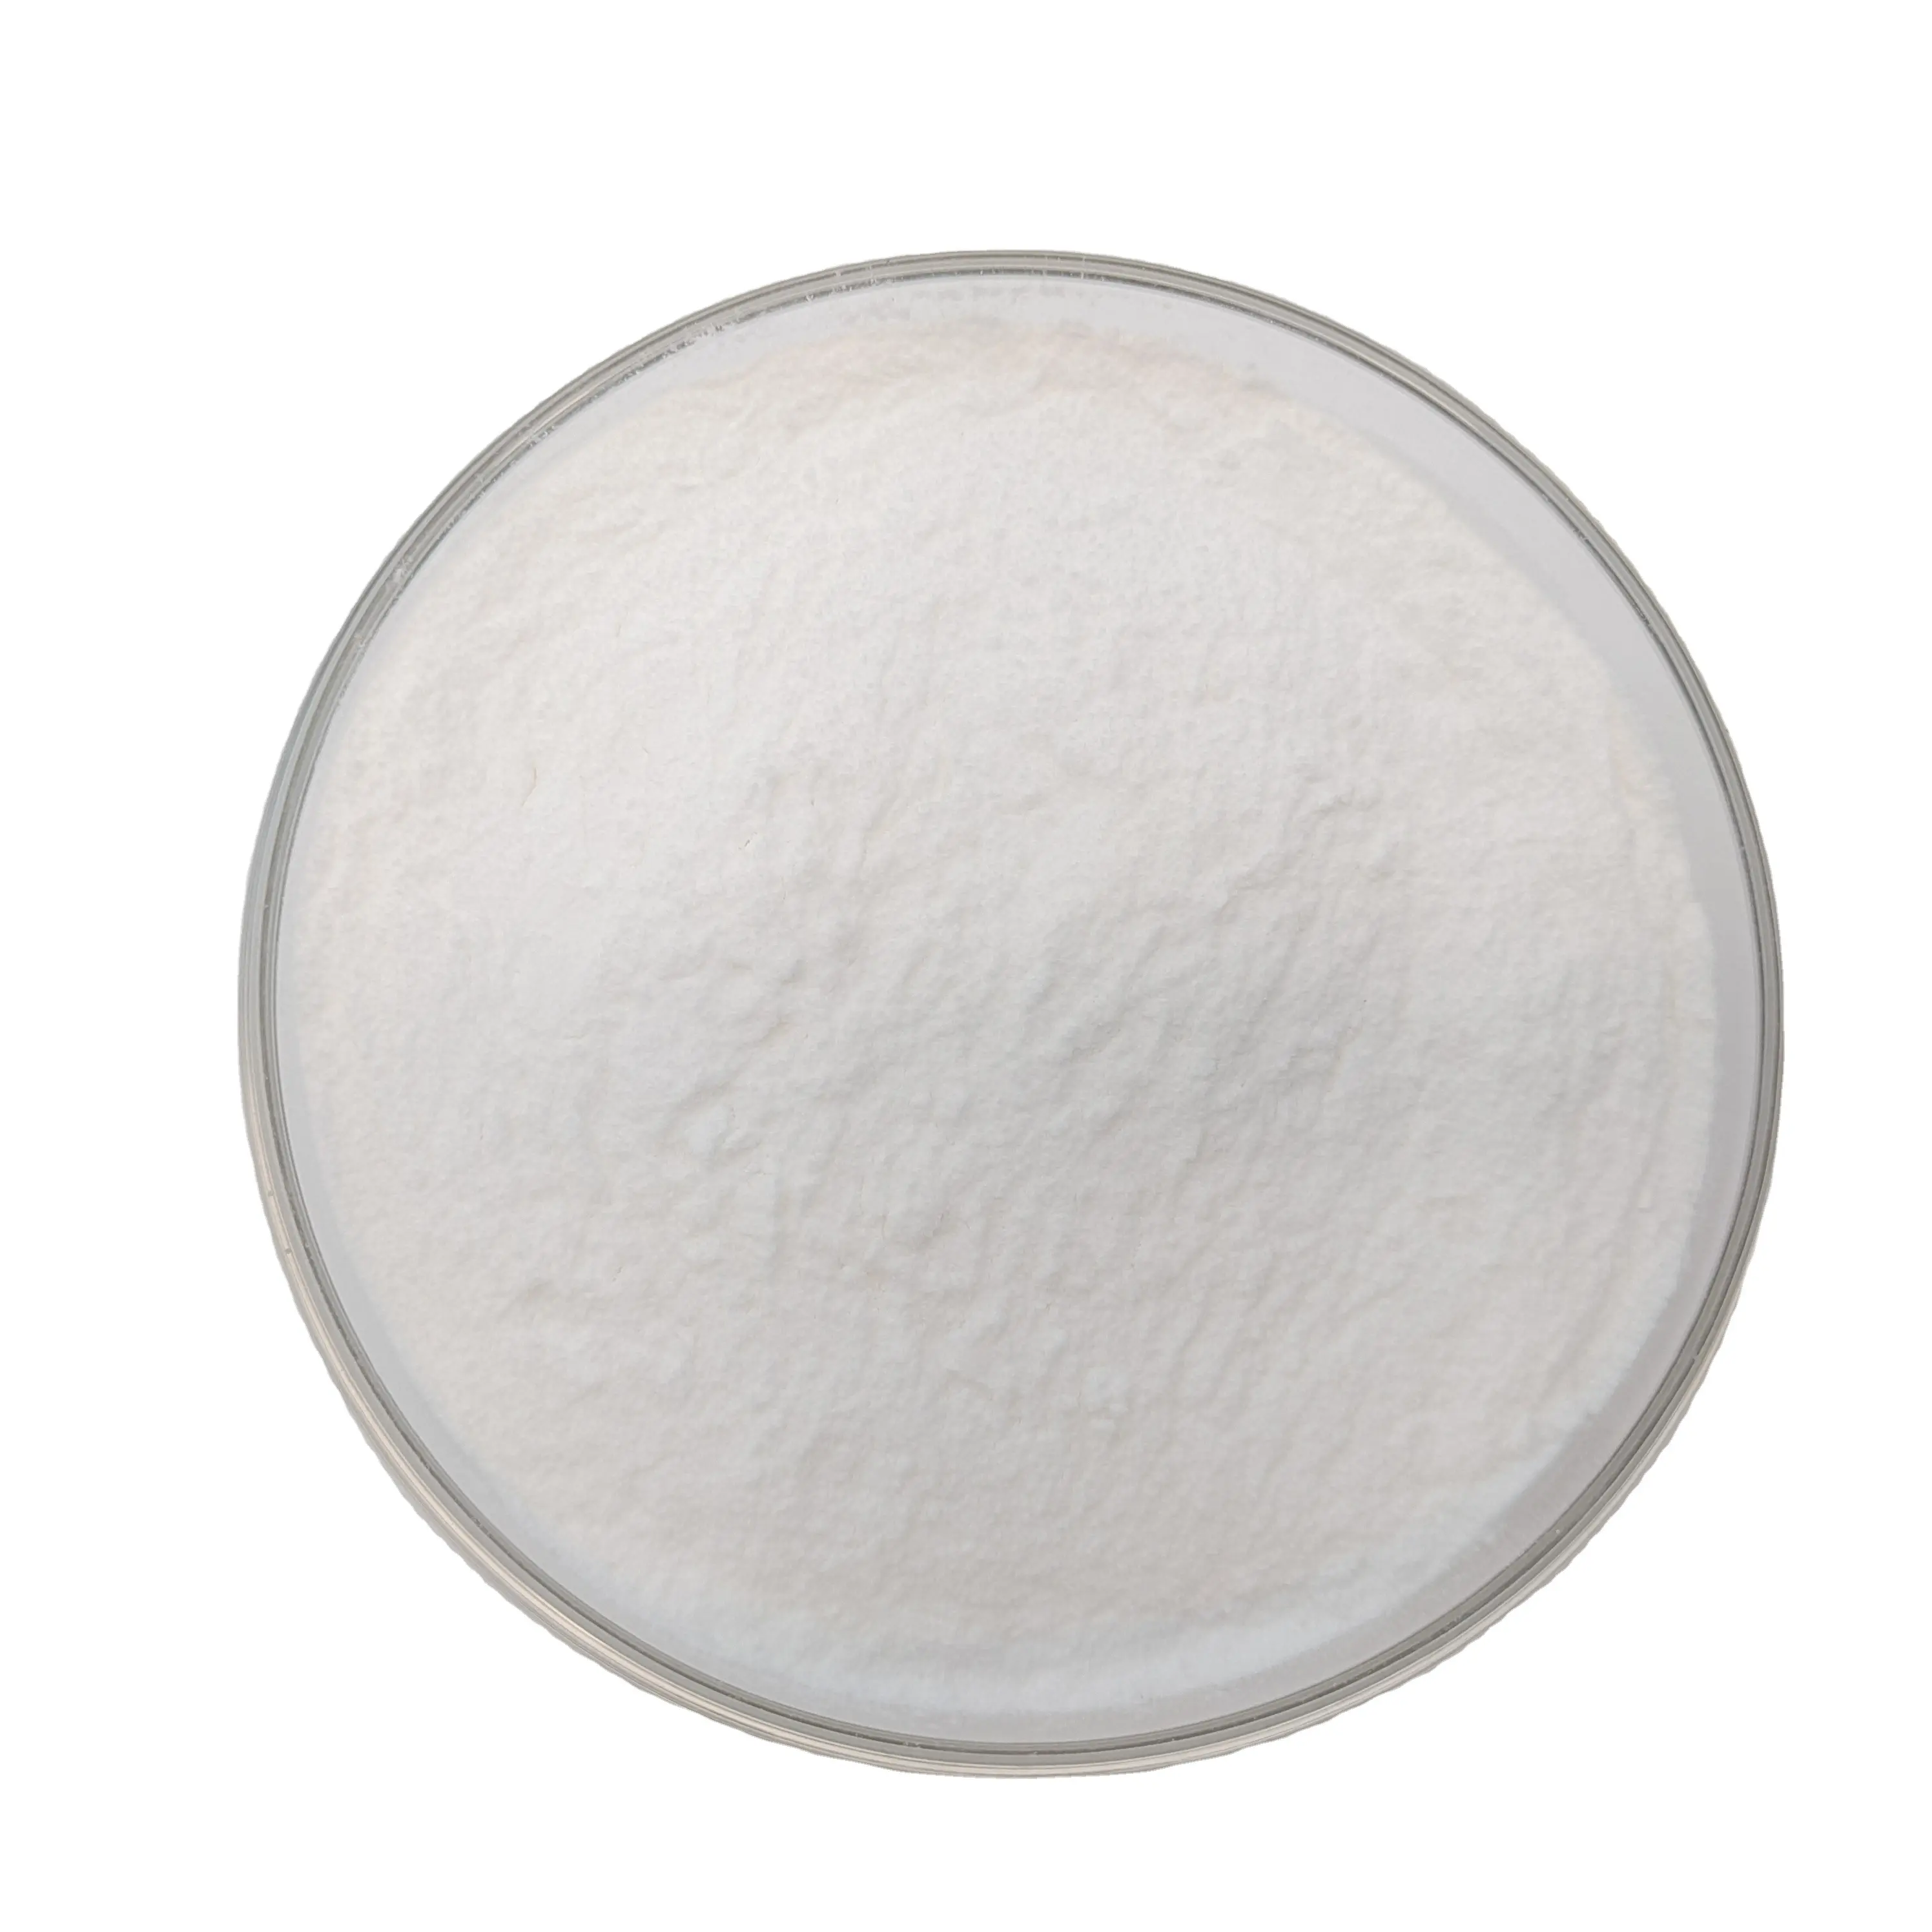 Agent auxiliaire chimique de nettoyage industriel de gluconate de sodium 99% pur